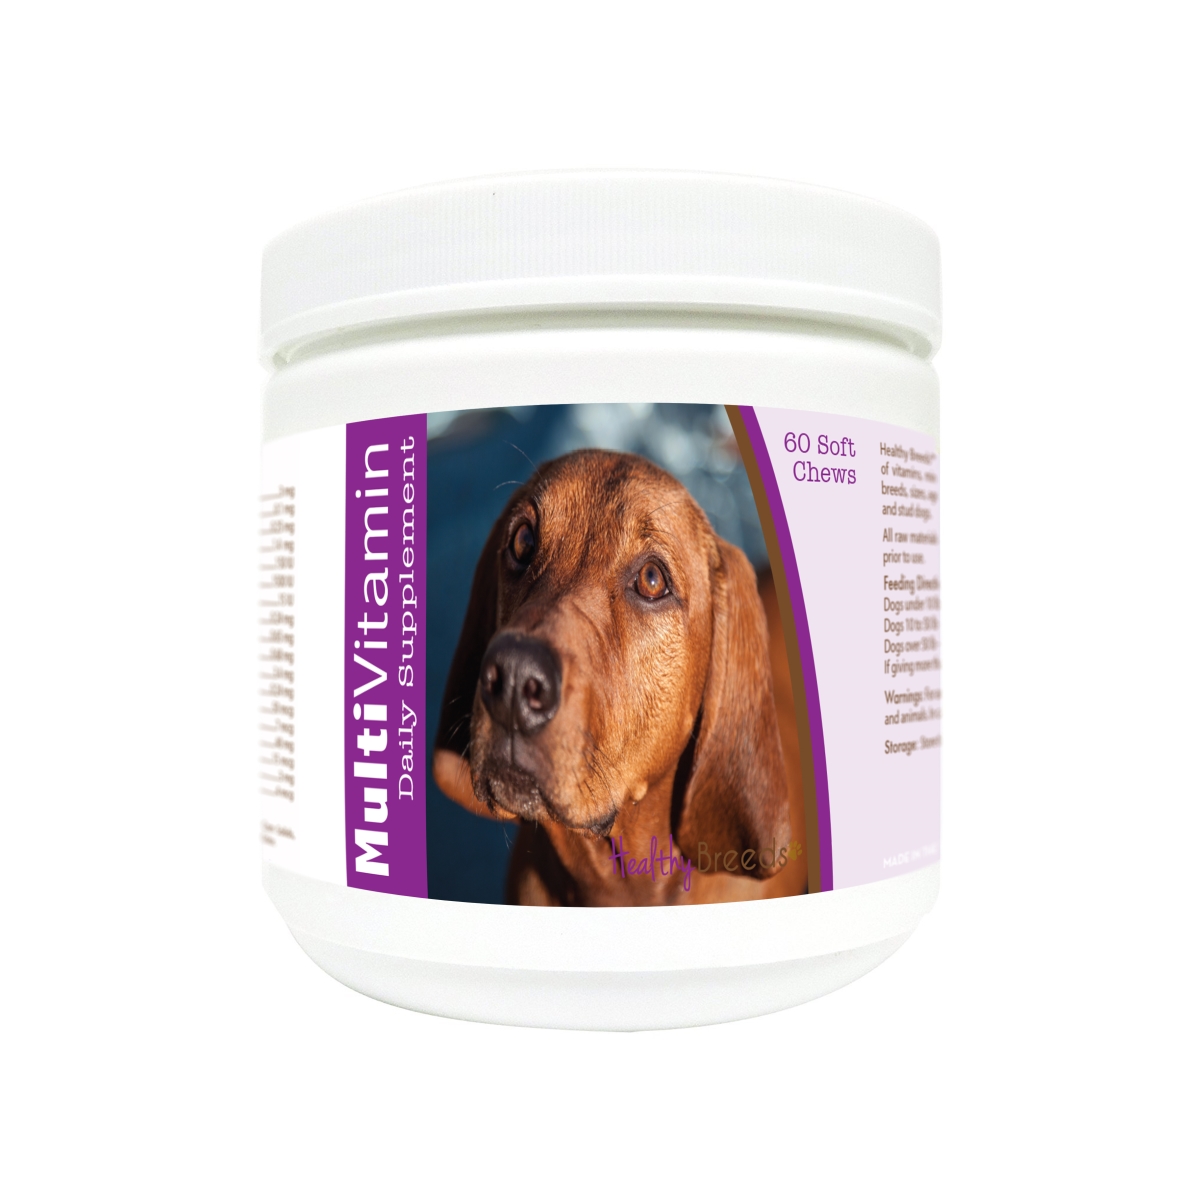 840235174301 Redbone Coonhound Multi-vitamin Soft Chews - 60 Count